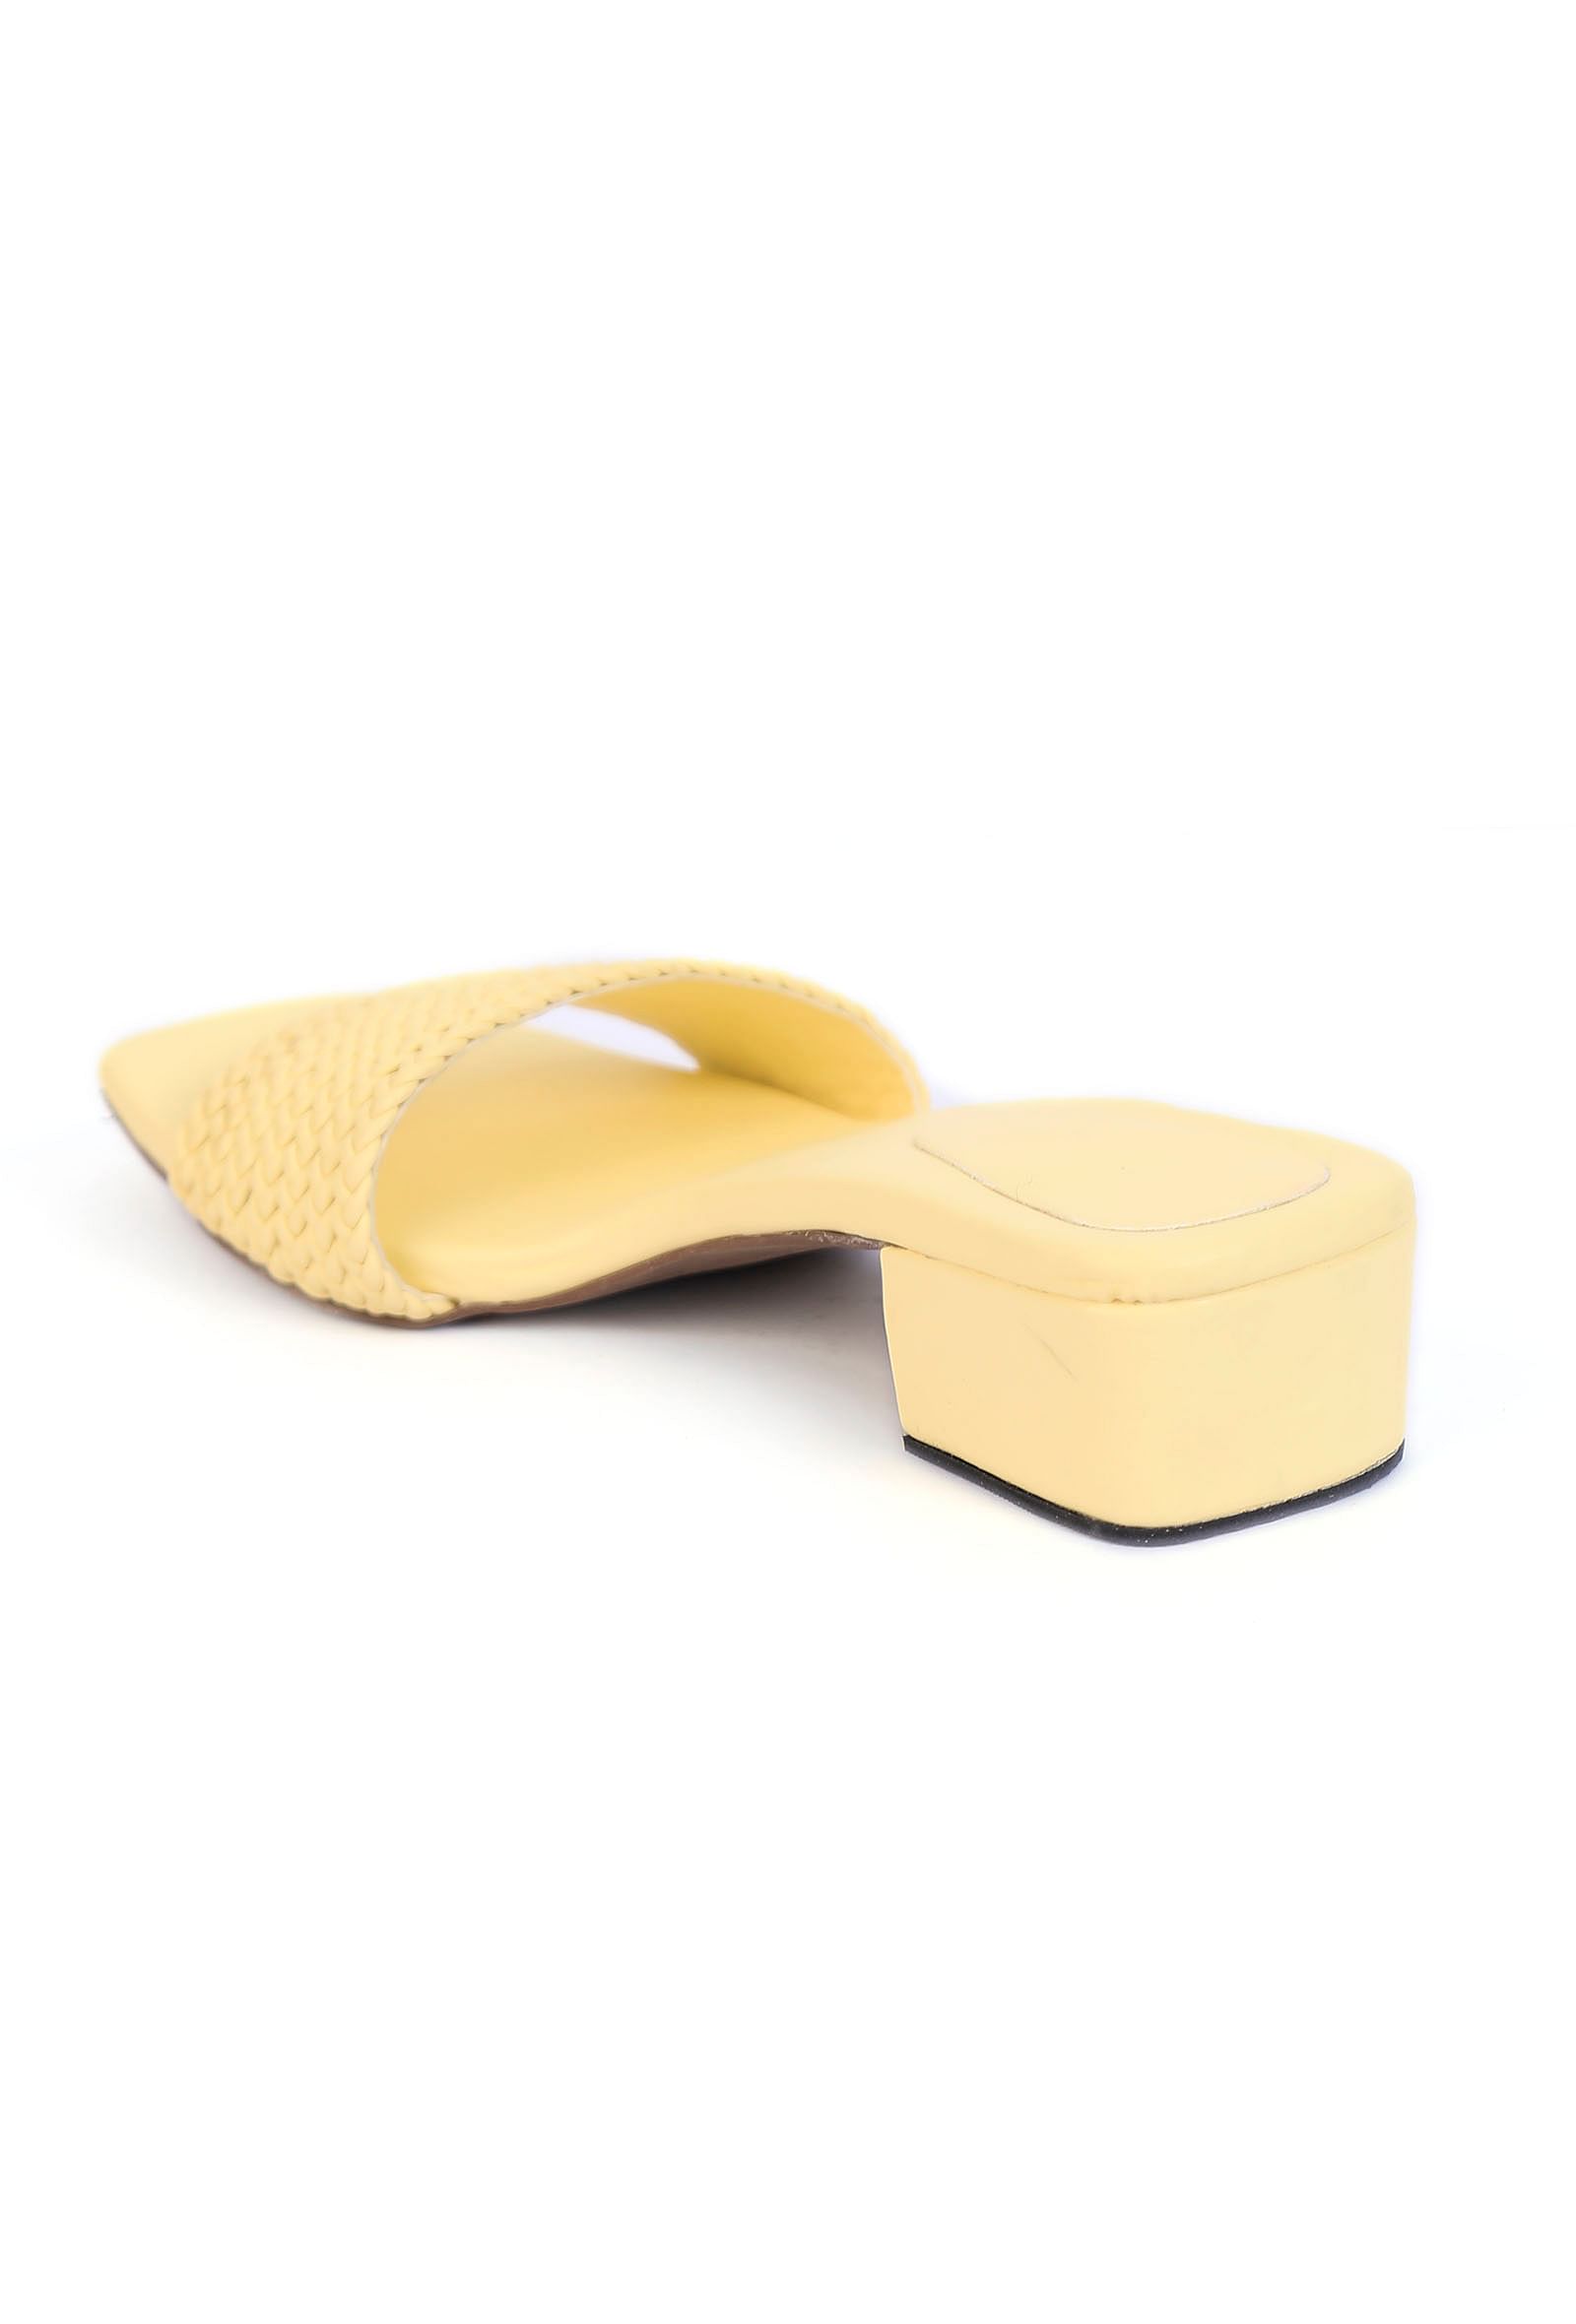 Buy Best Yellow Heels From Top Brands Online In India